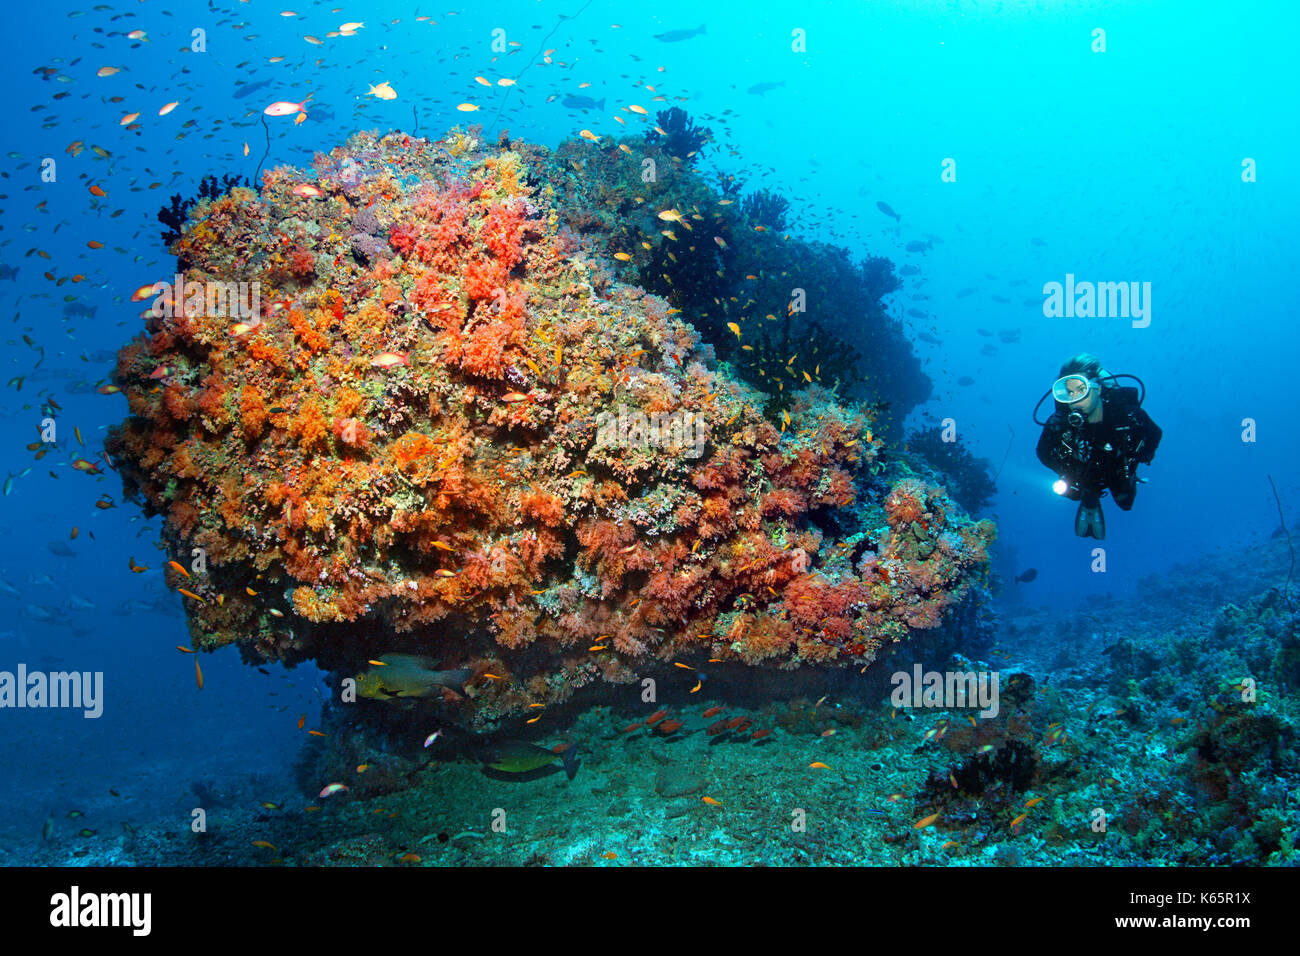 Plongeur, barrière de corail, corail, bloc rouge divers coraux mous (dendronephthya sp.) et l'essaim de plume la perche (pseudanthias sp.) Banque D'Images